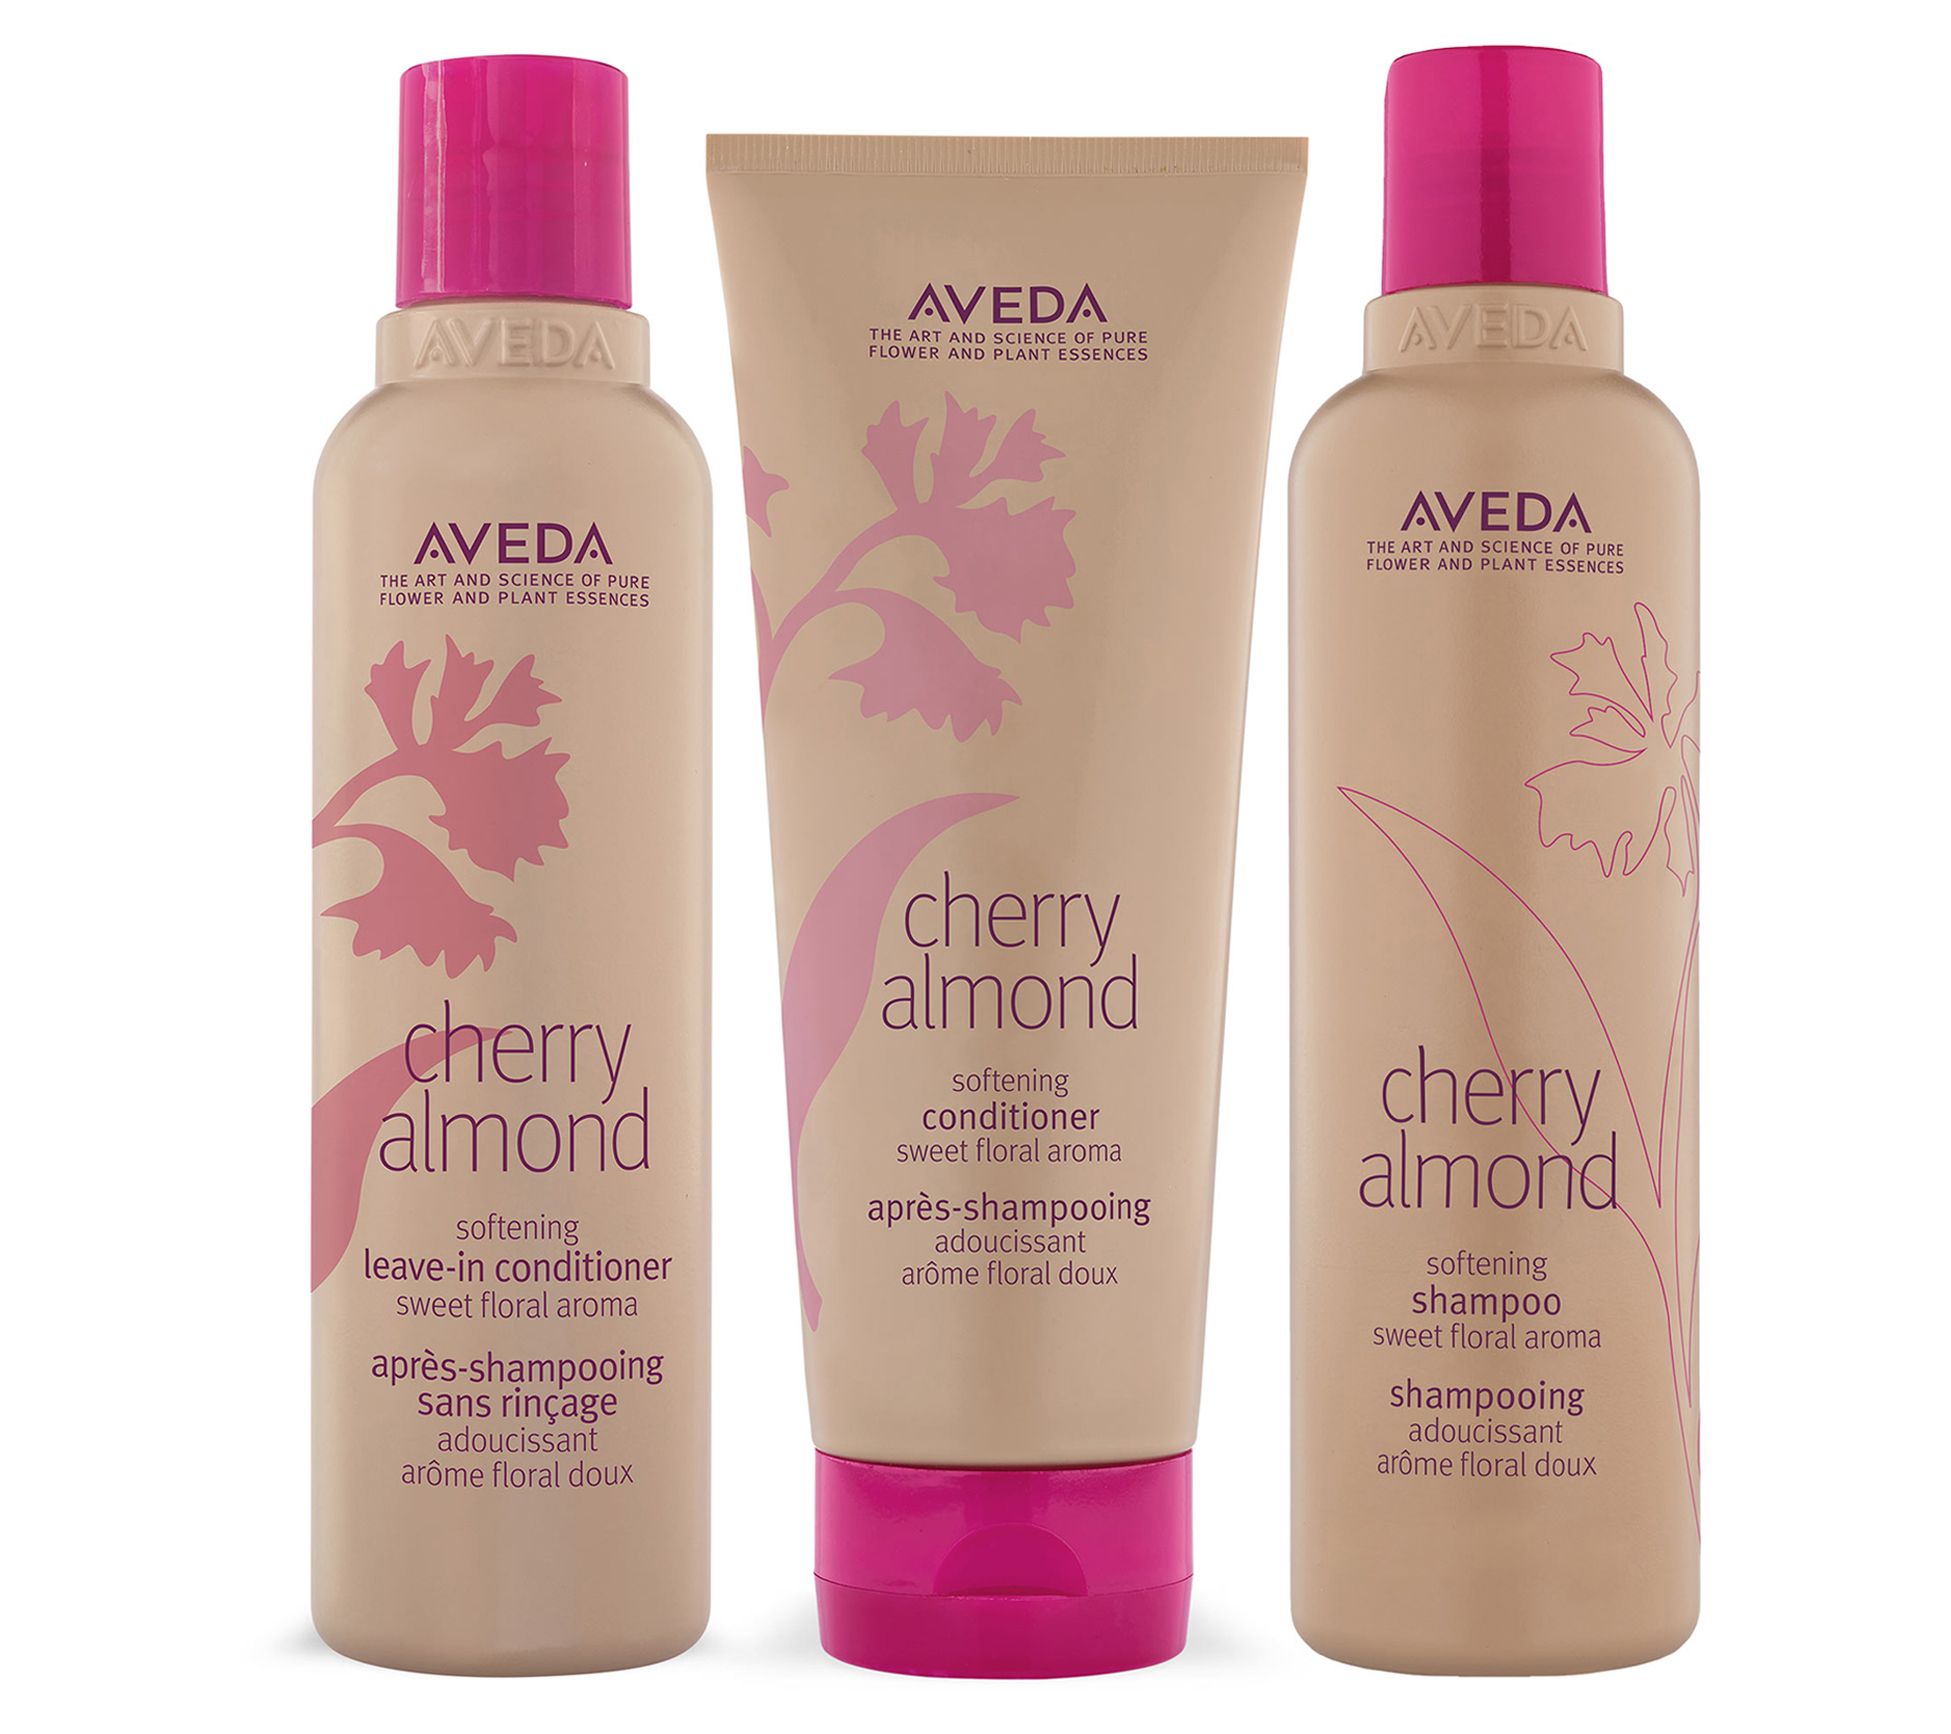 Aveda Cherry Almond Softening Set -